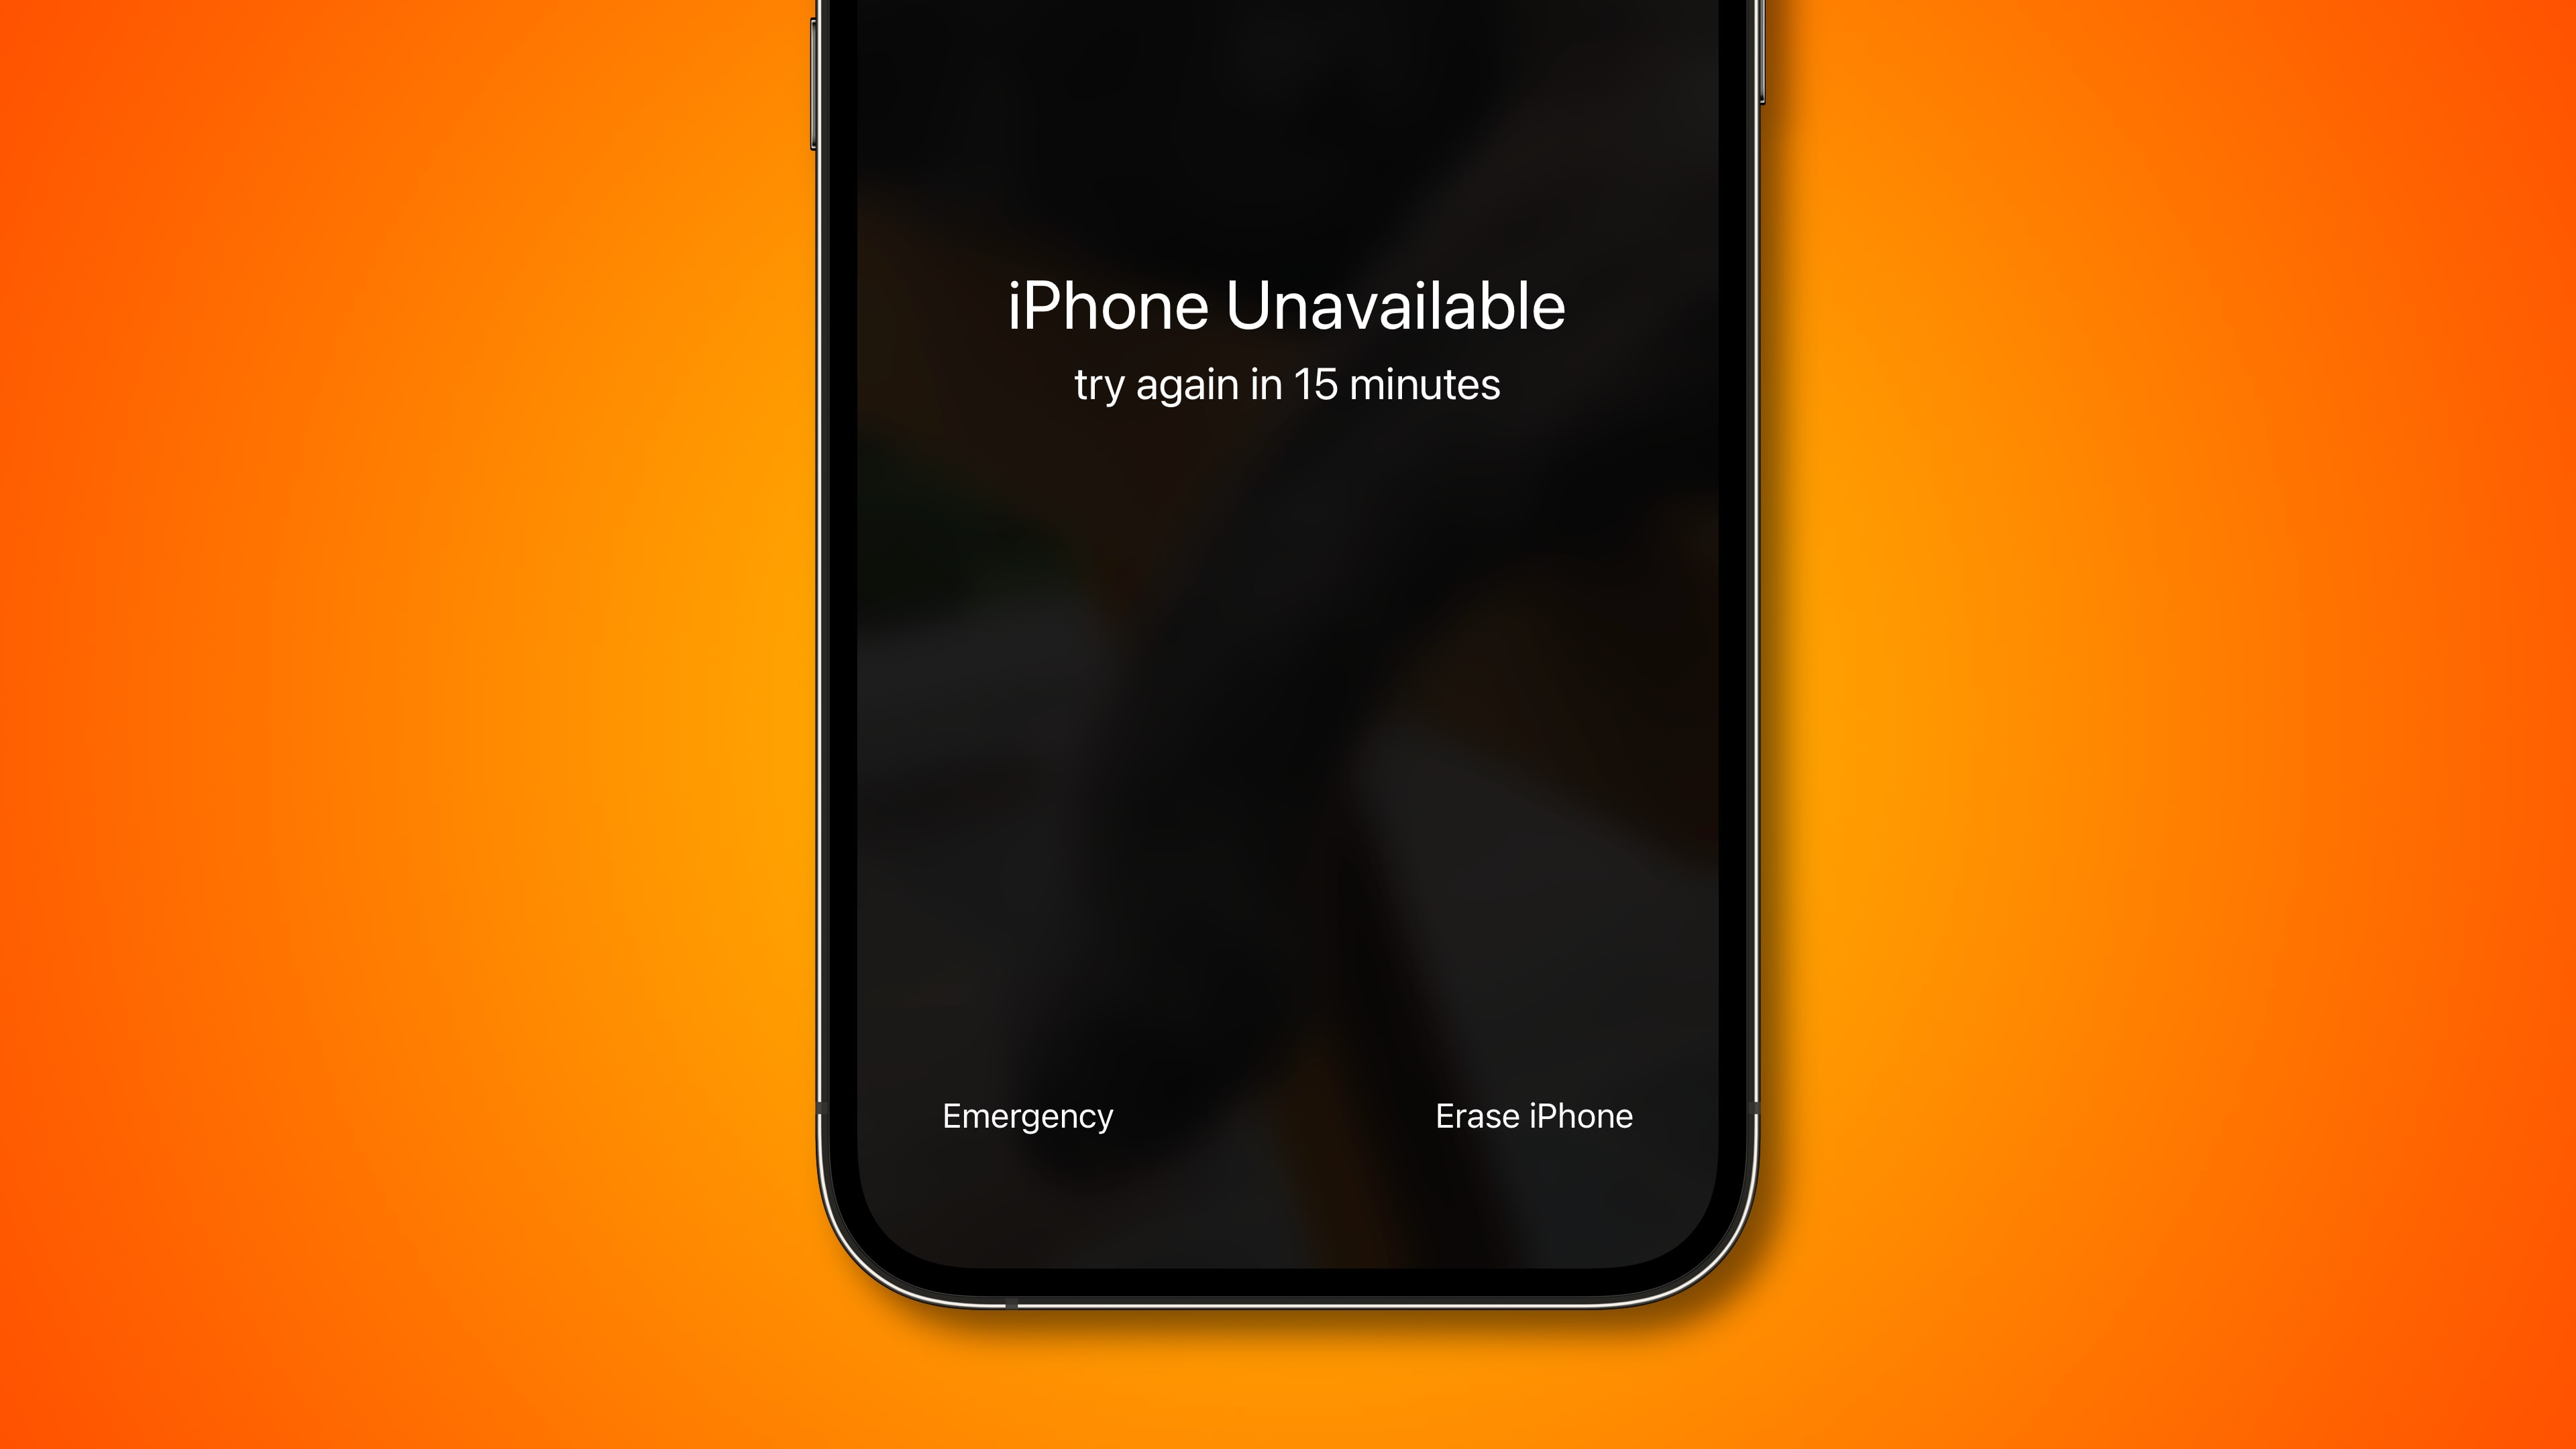 Capture d'écran de l'appareil iPhone avec le "iPhone indisponible" message sur l'écran de verrouillage et le "Effacer l'iphone" option en bas à droite, sur un fond dégradé vif